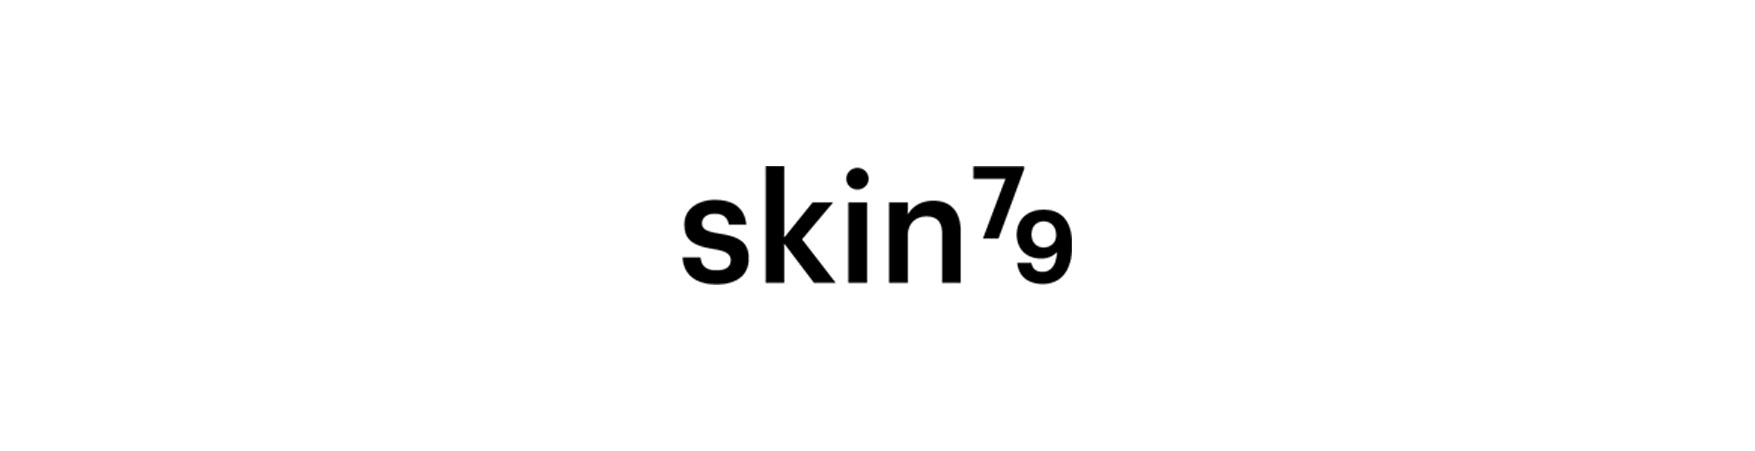 Skin79